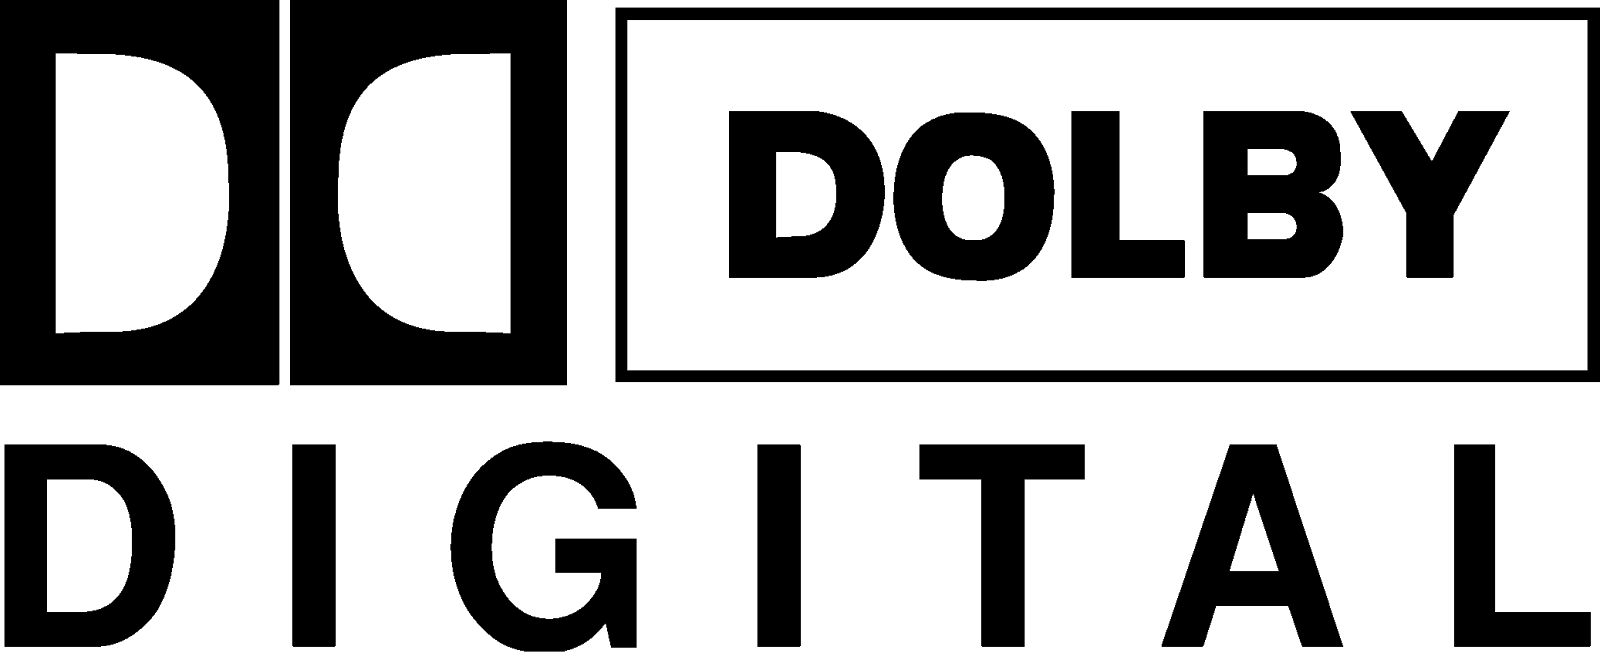 Hd Dvd Logo Logodix